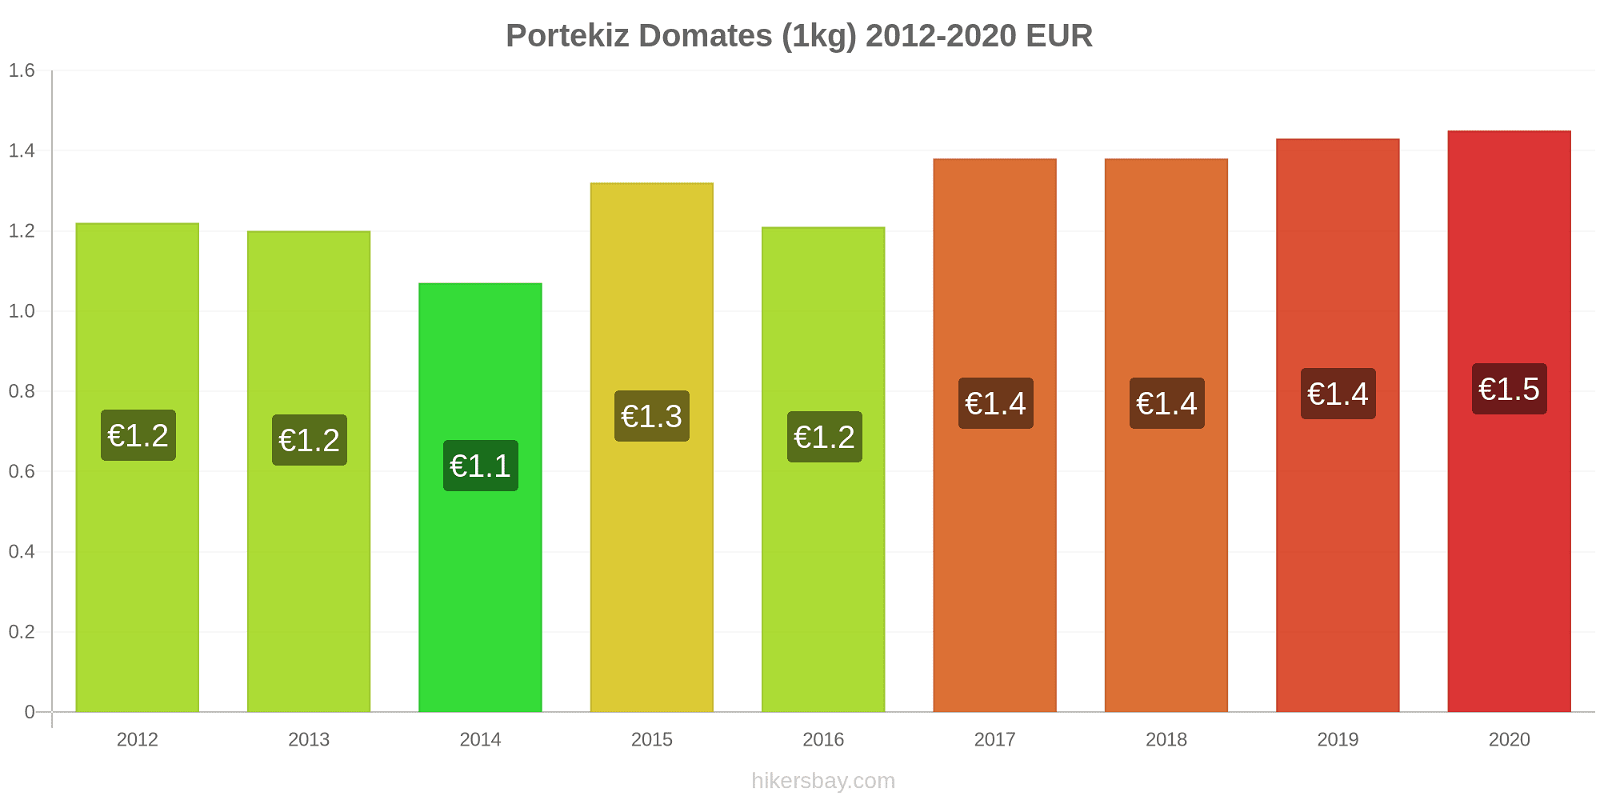 Portekiz fiyat değişiklikleri Domates (1kg) hikersbay.com